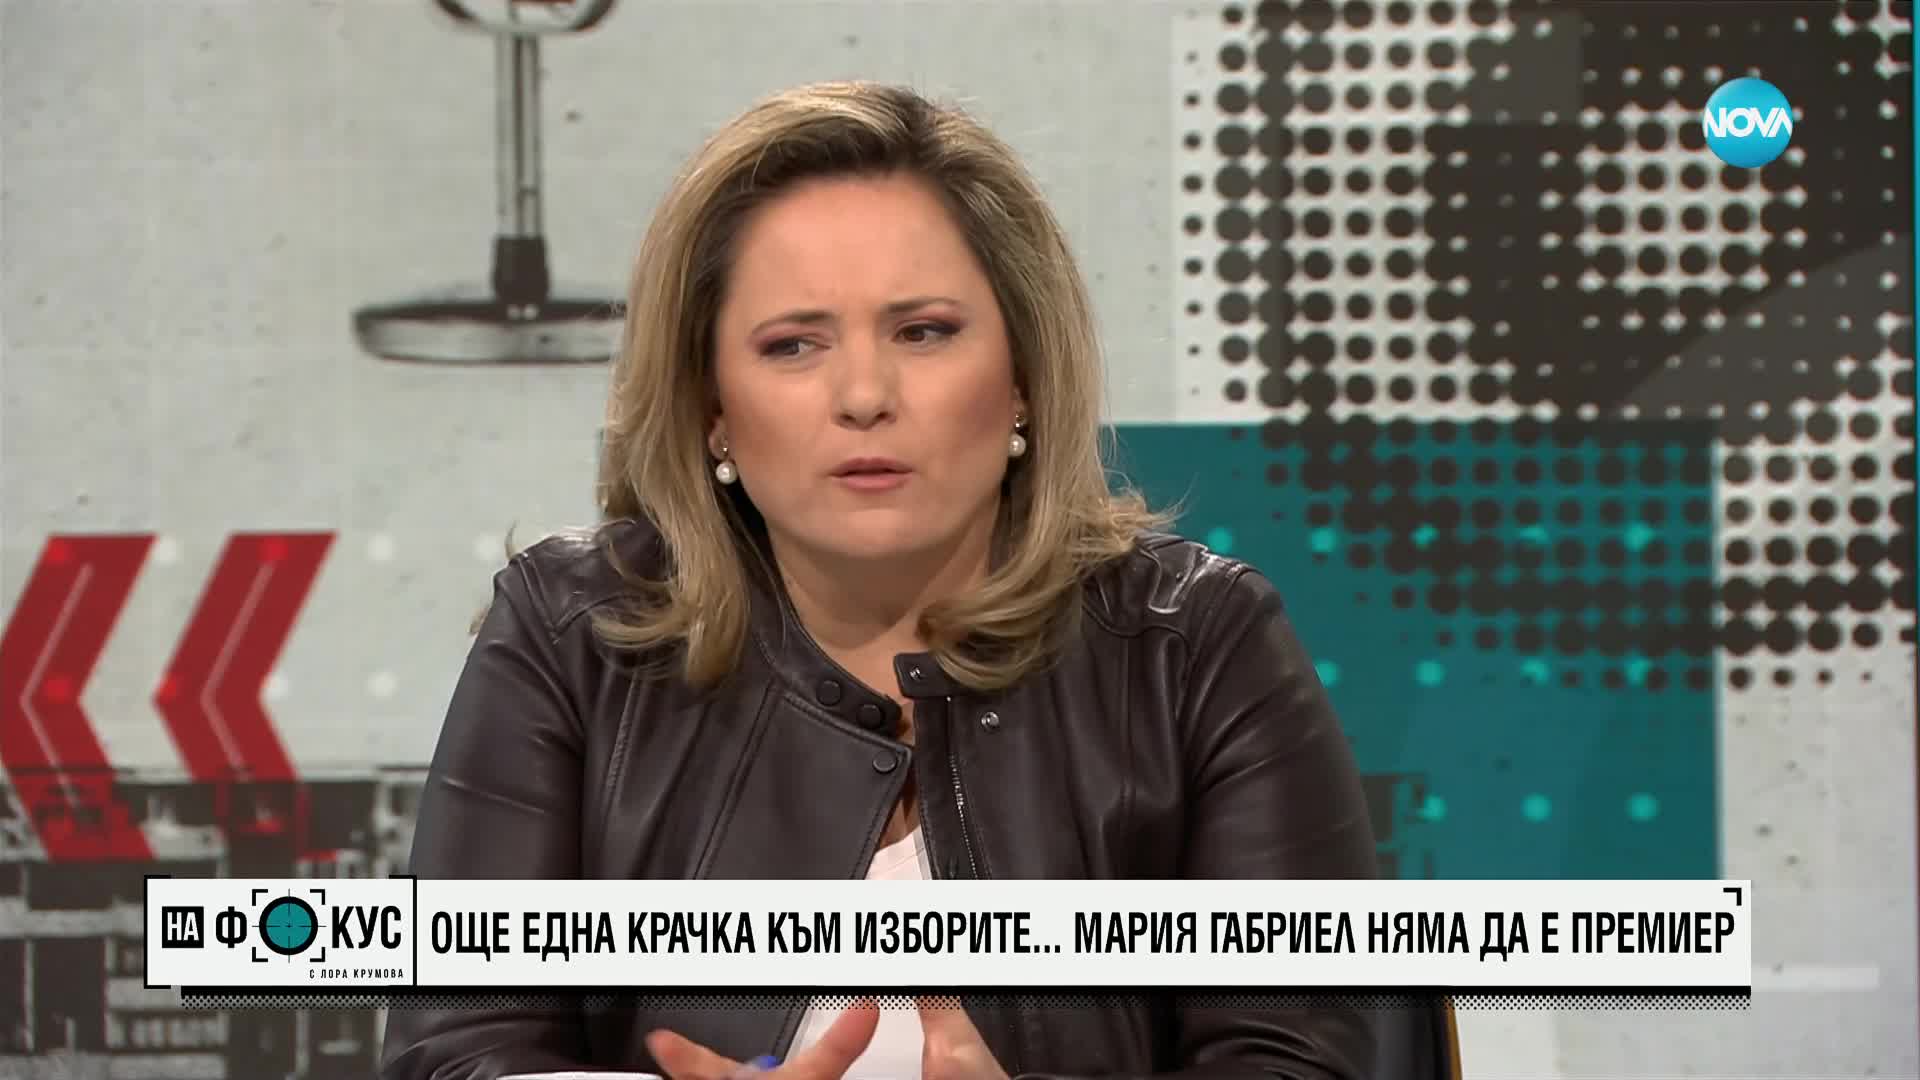 Димитър Ганев: Вероятността да ходим на избори е огромна, но в последните седмици всичко е „предпосл